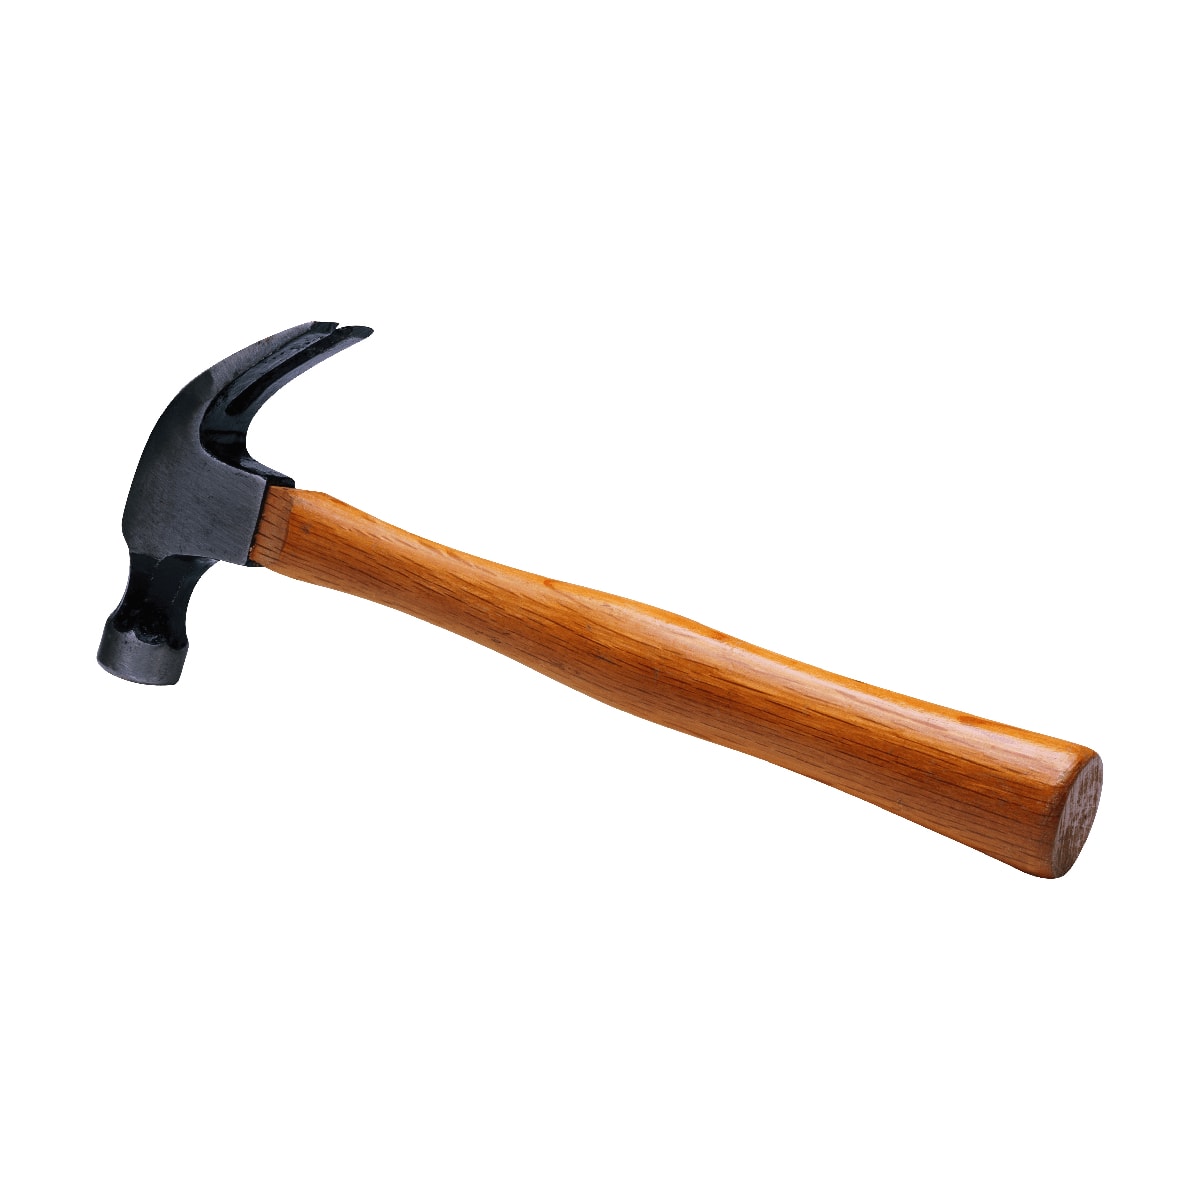  Hammer